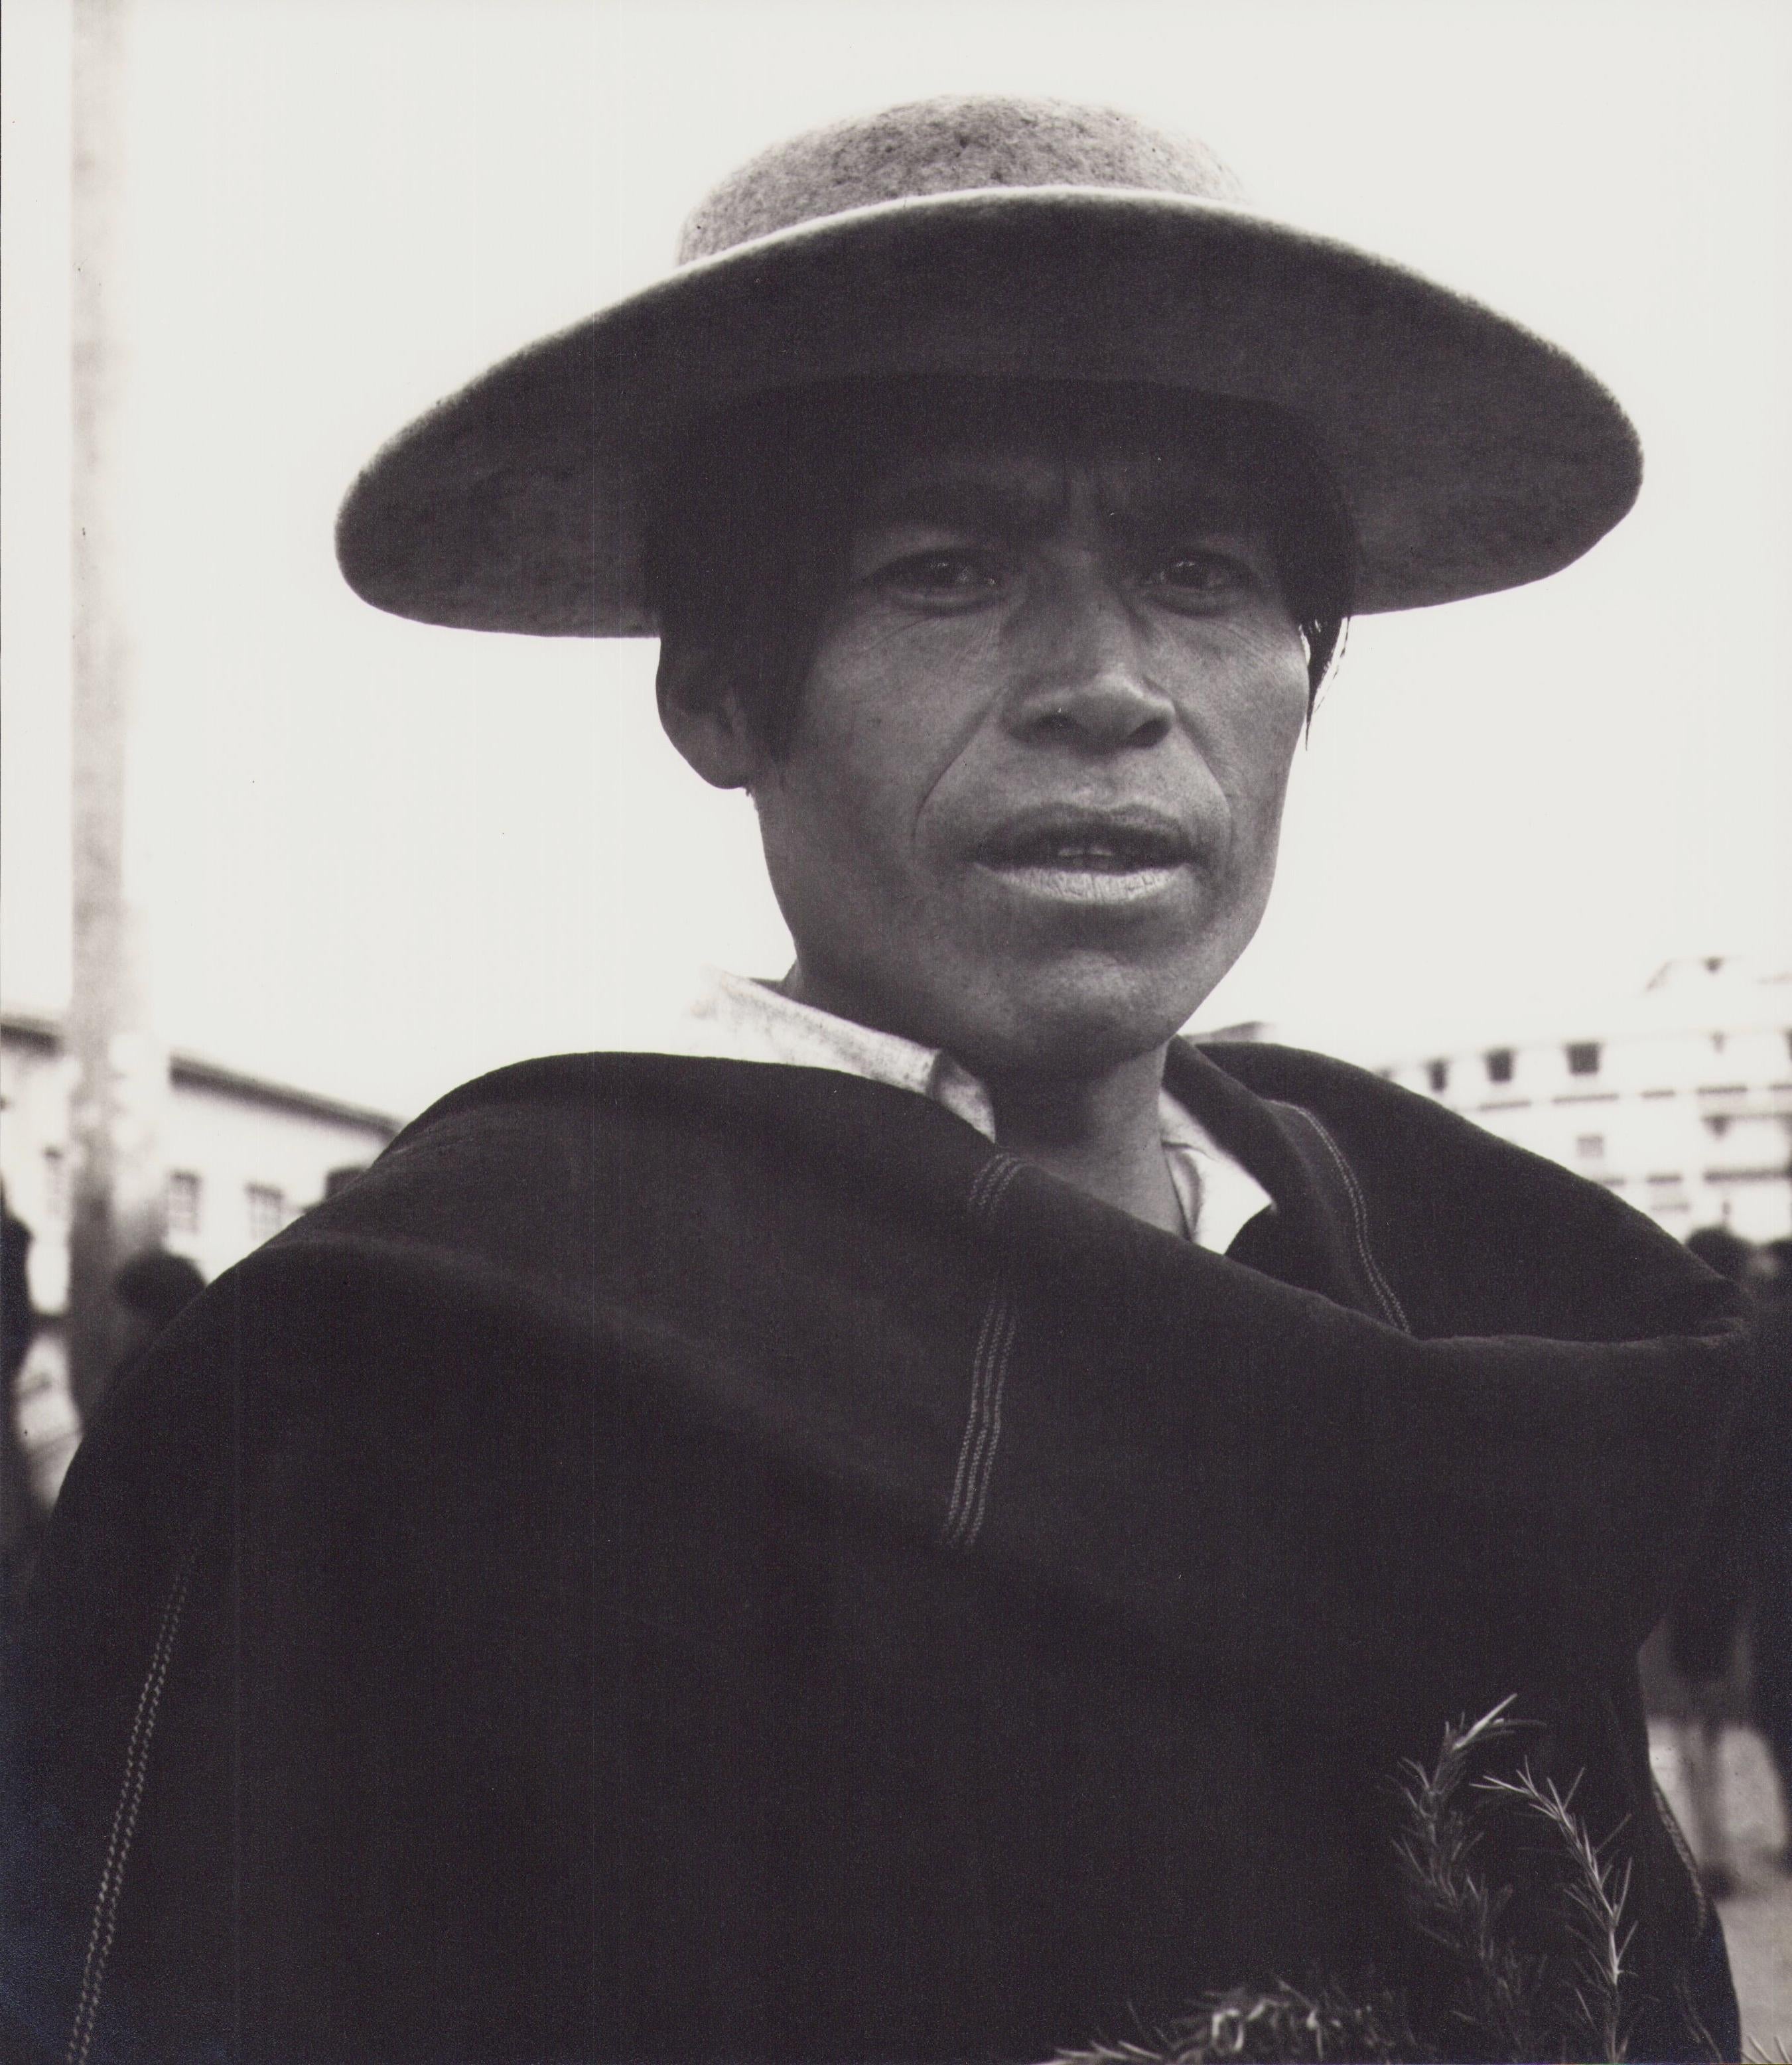 Hanna Seidel Portrait Photograph - Ecuador, Indigenous, Black and White Photography, 1960s, 16, 5 x 23 cm